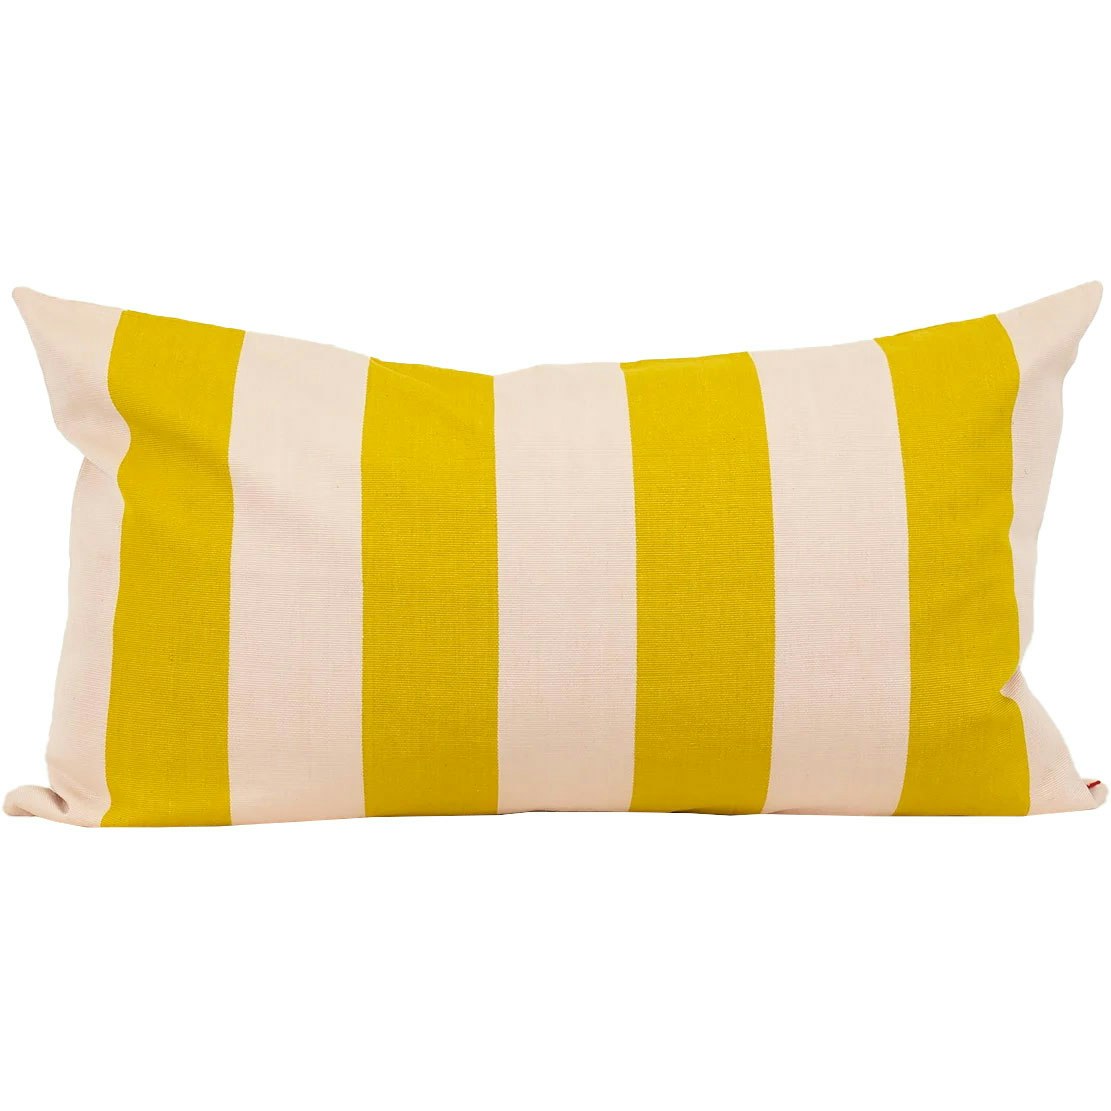 Fifi Tyynynpäällinen 50x90 cm, Mustard/Vaaleanpunainen